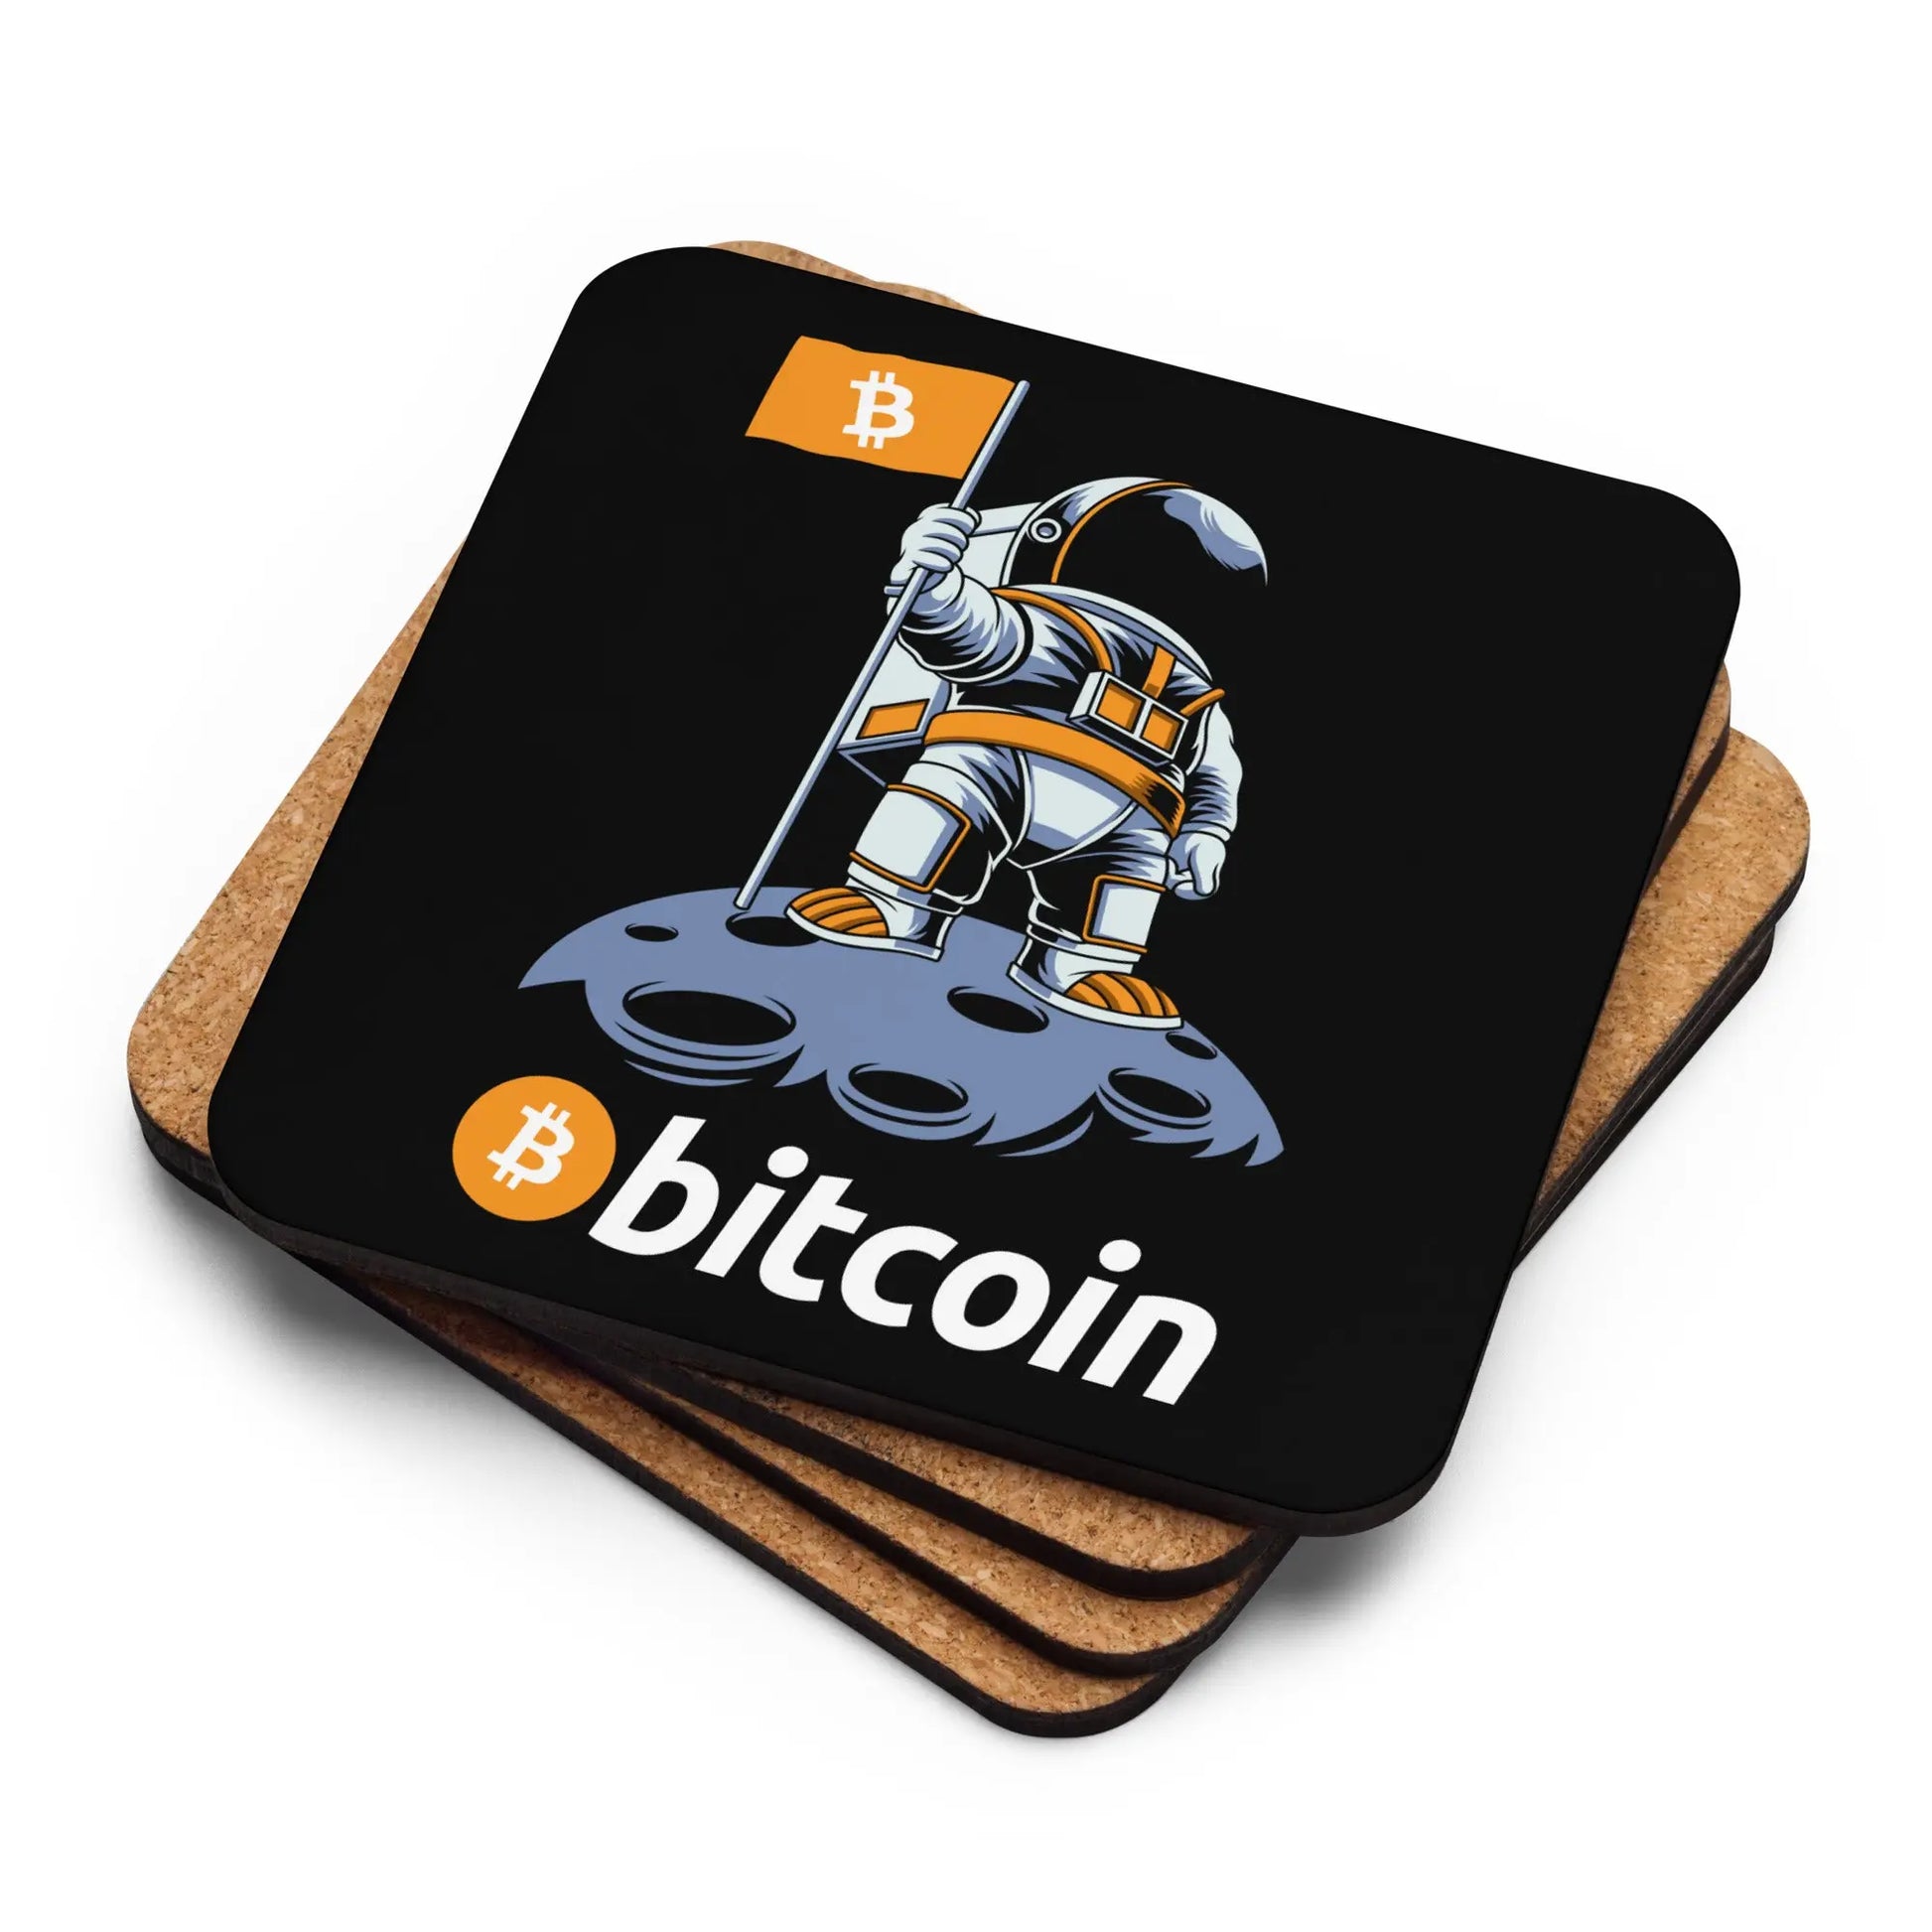 Bitcoin To The Moon - Cork-back Bitcoin Coaster